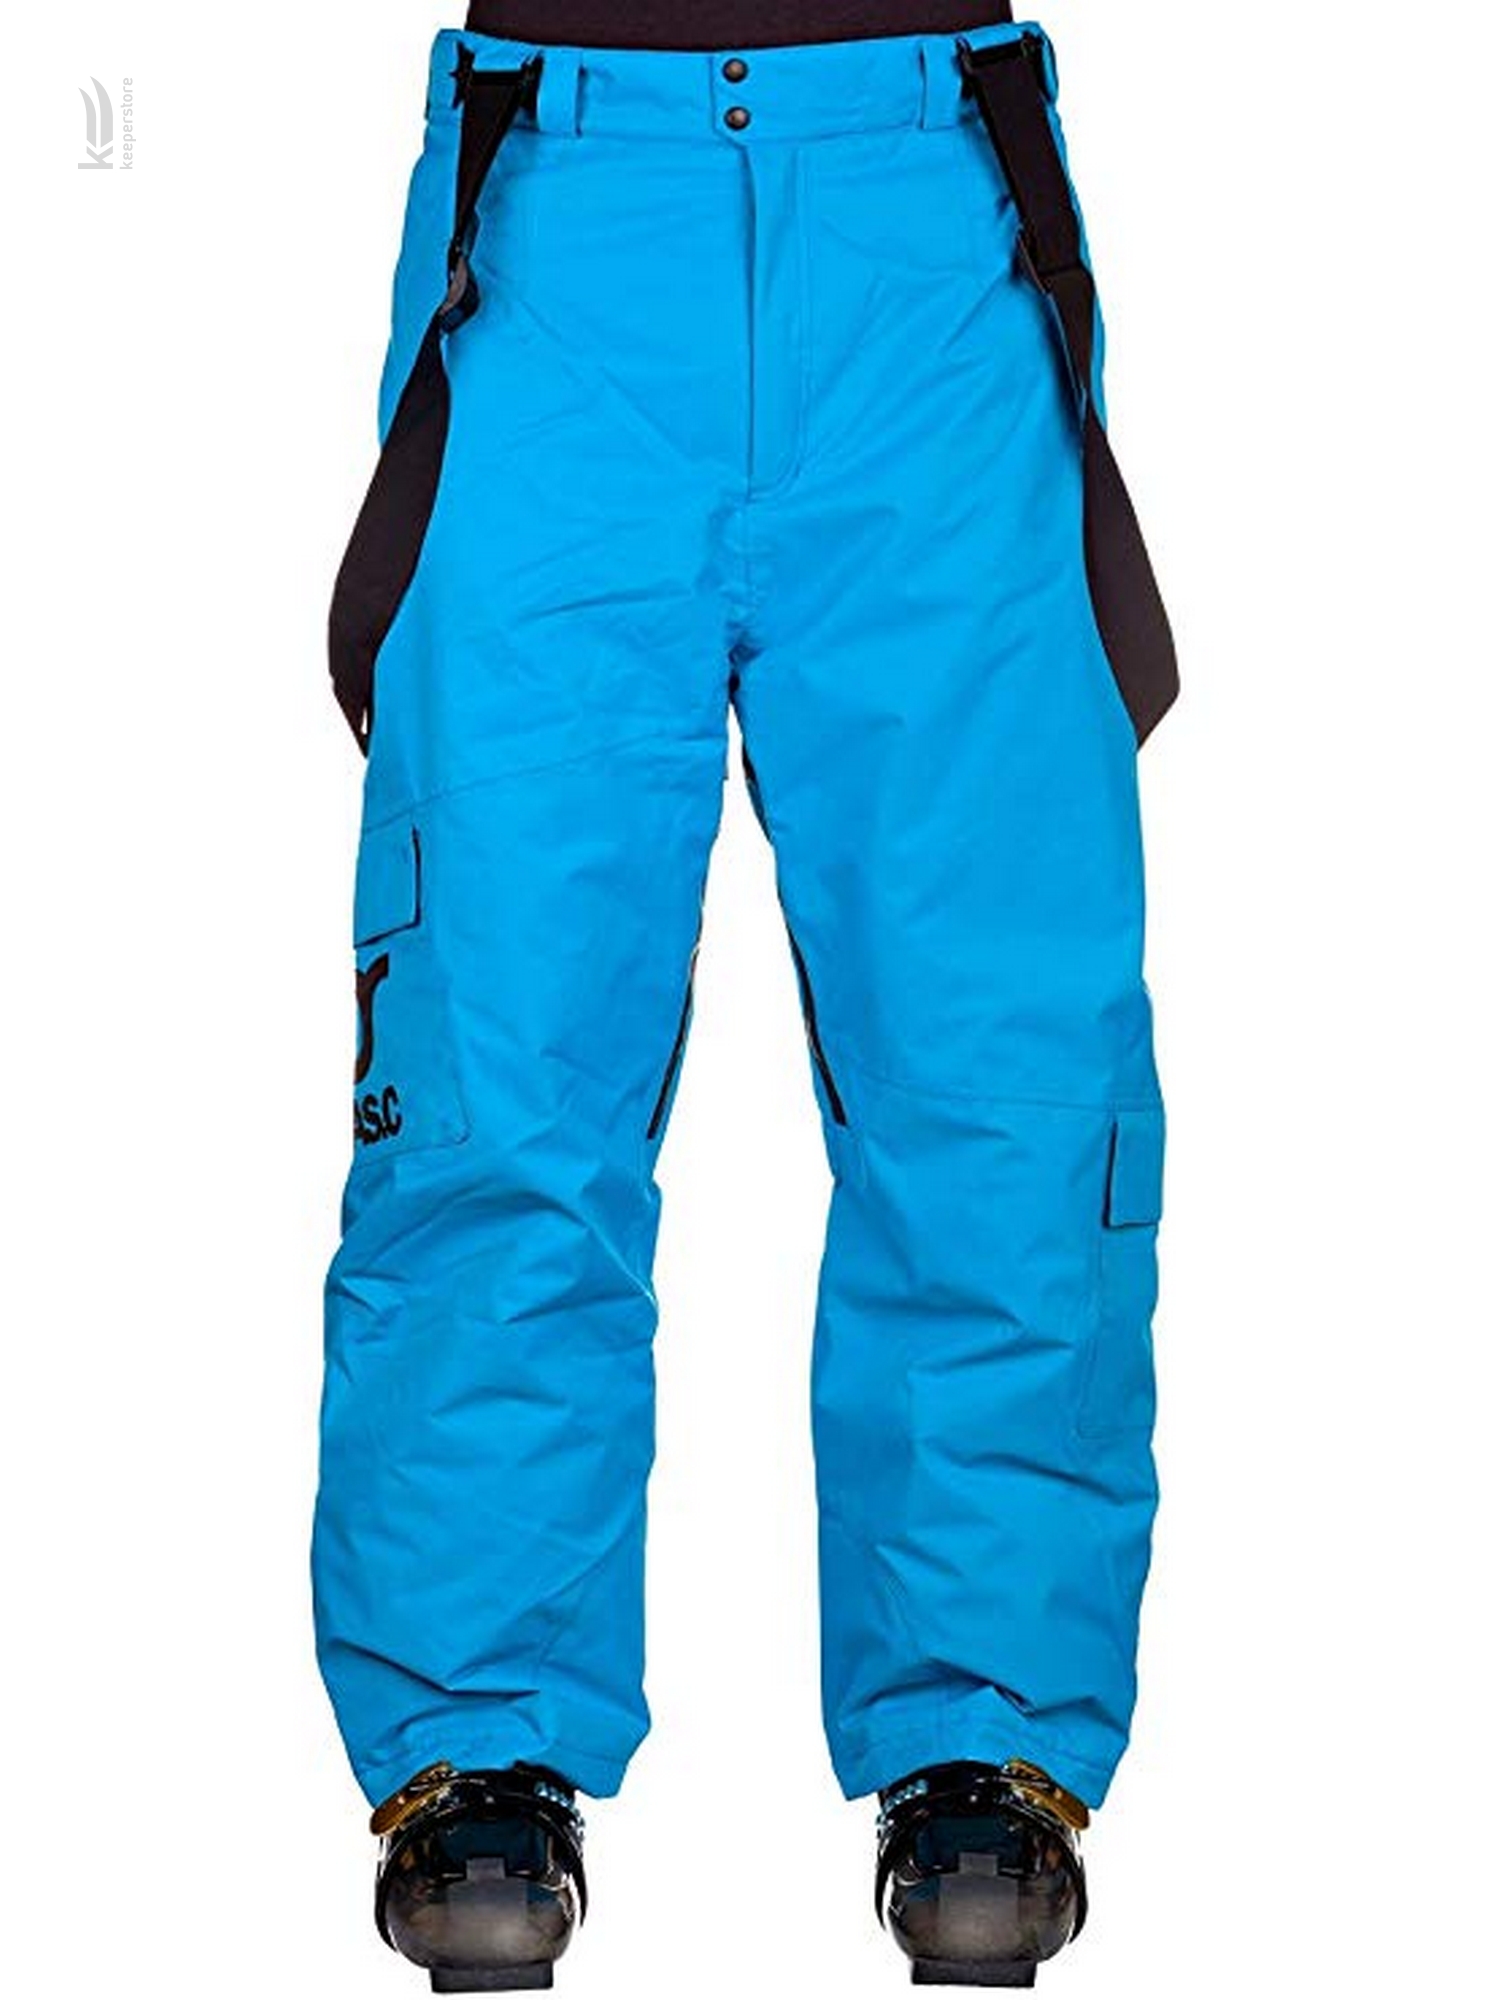 Чоловічі сноубордистські штани Fasc Monarch Blue Pants (M)